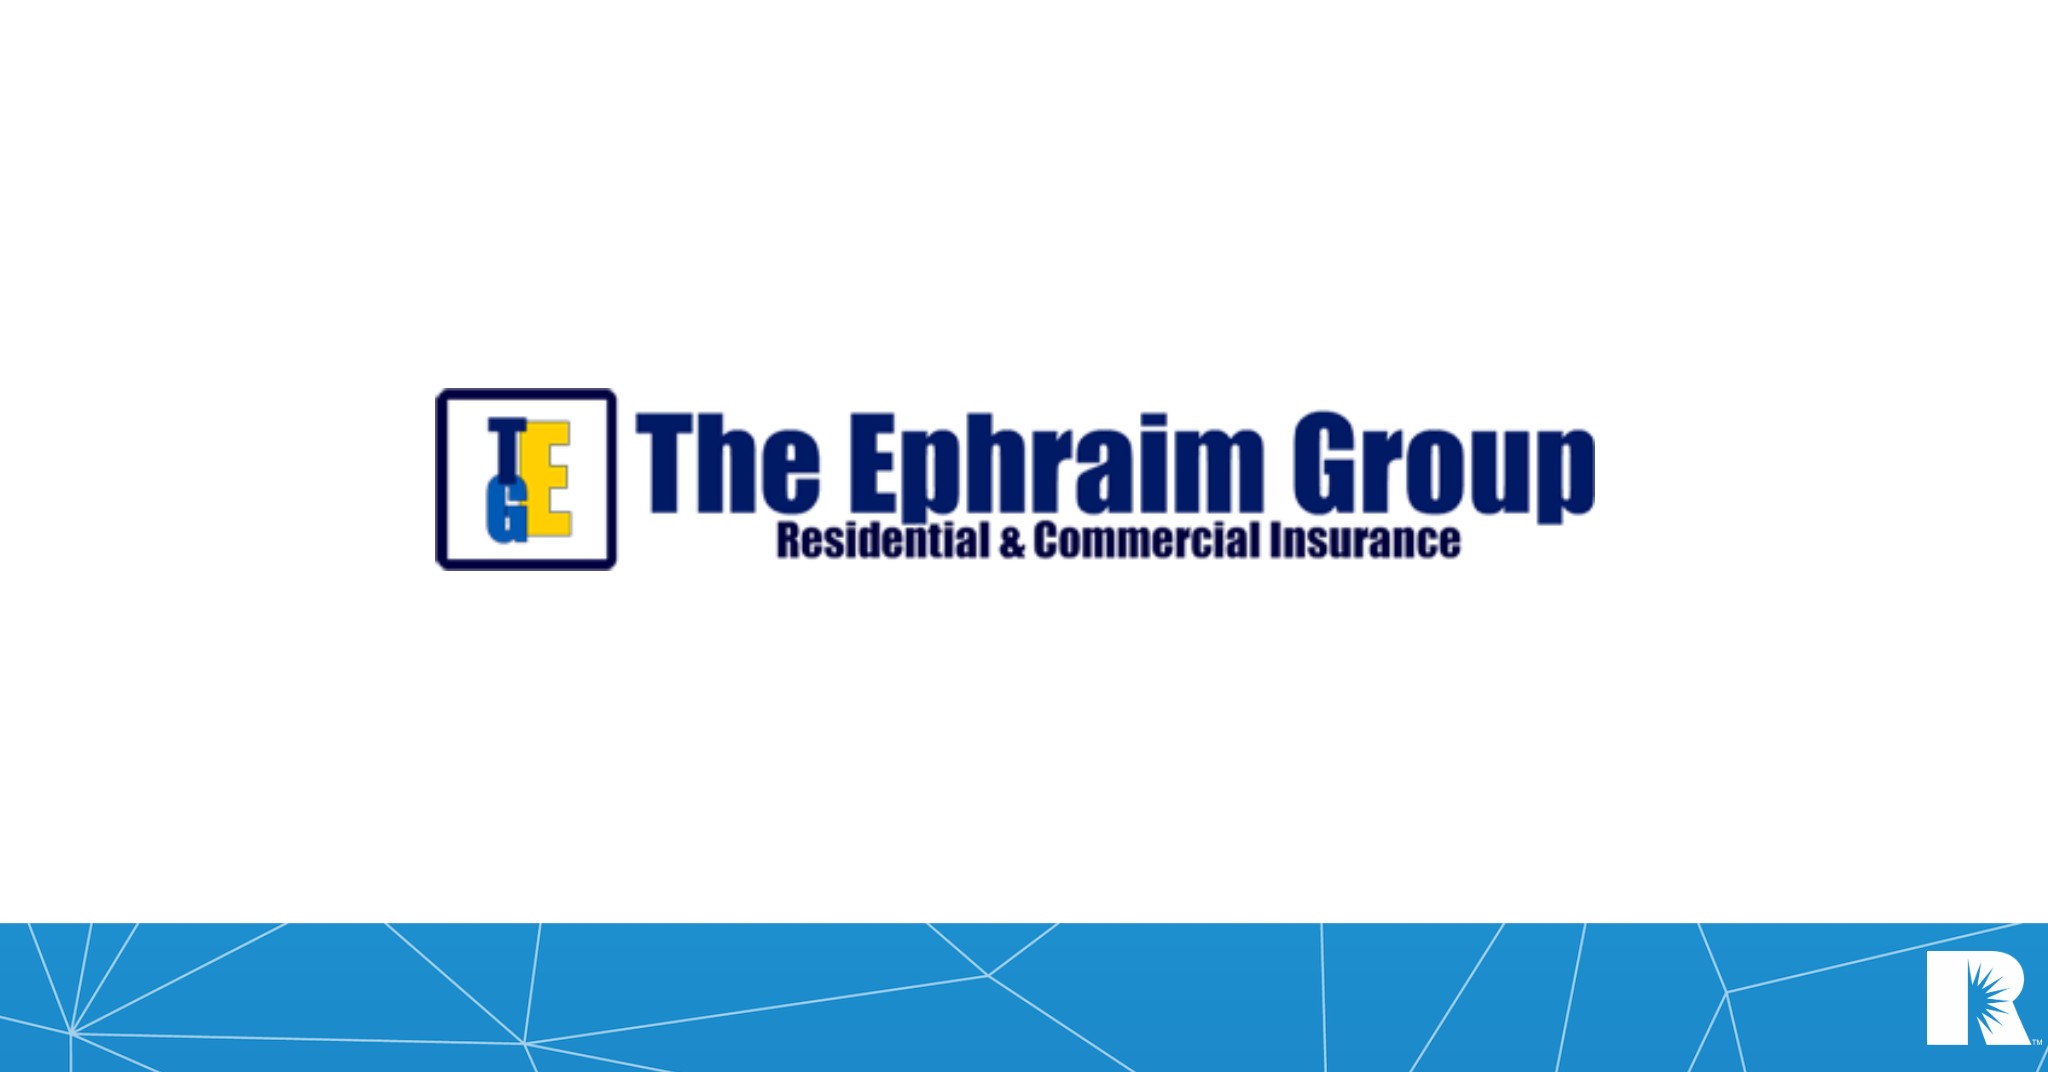 Agency logo for The Ephraim Group.